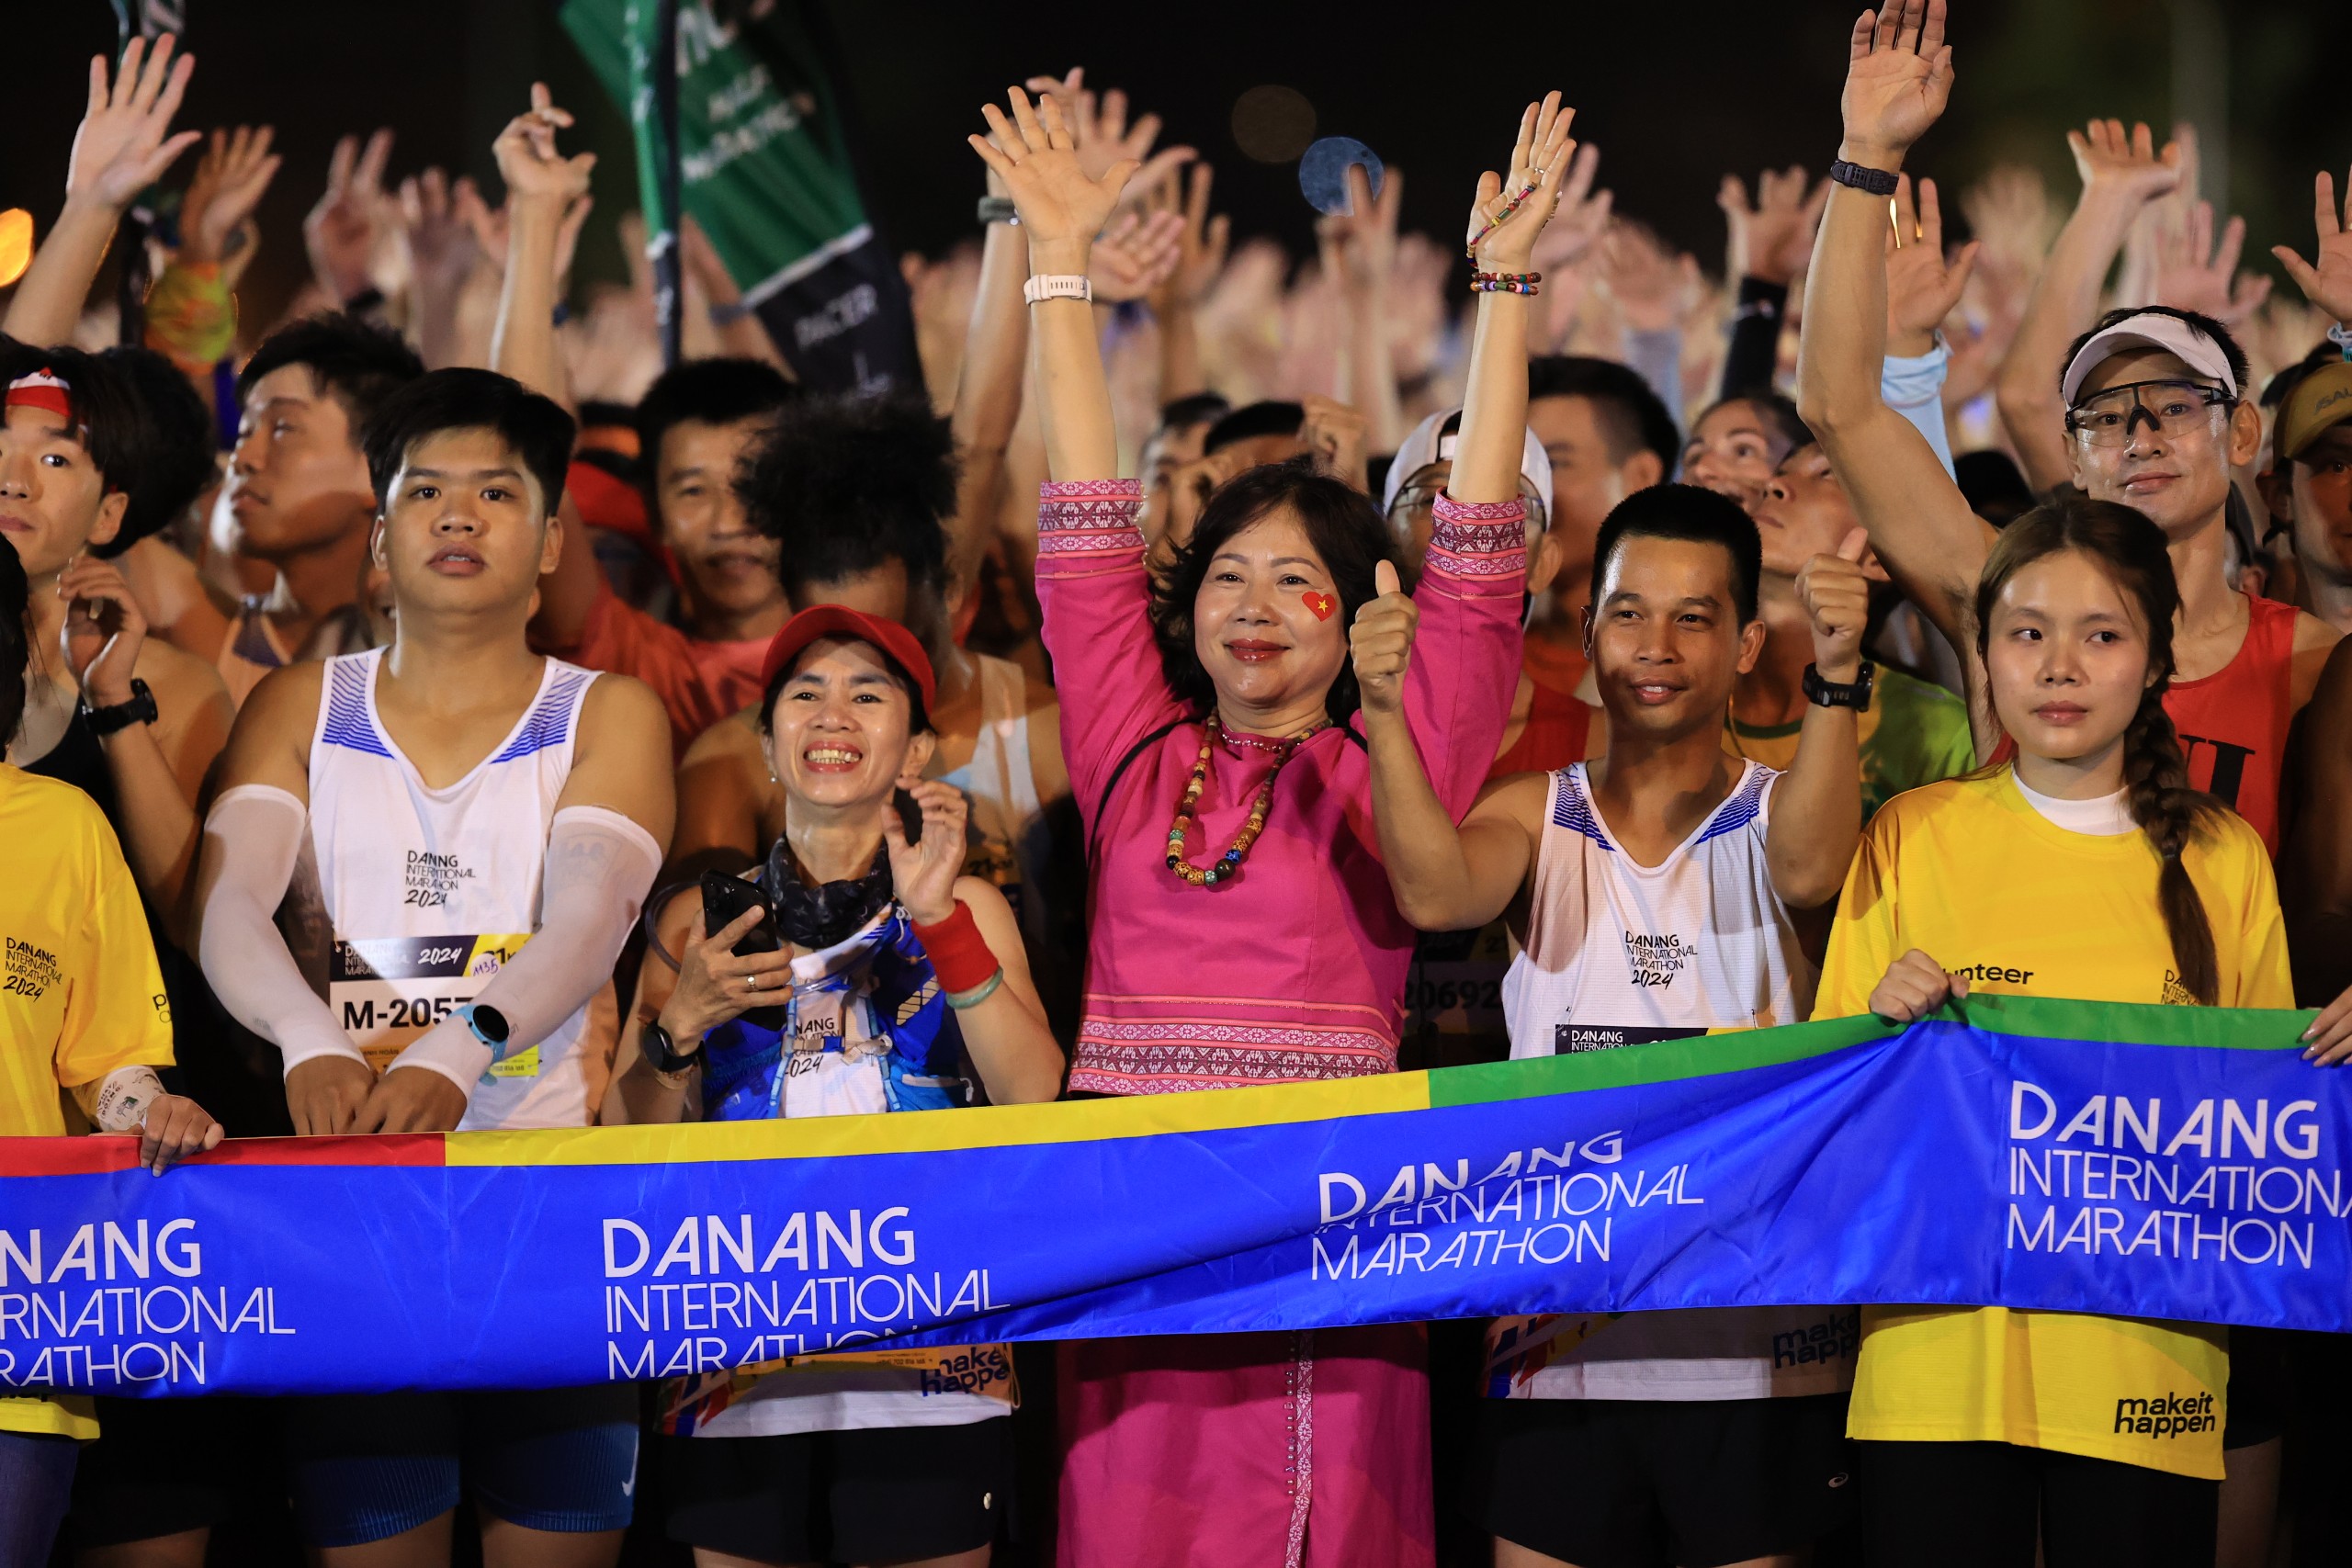 “Nữ hoàng chân đất” Phạm Thị Bình chiến thắng cuộc thi marathon quốc tế Đà Nẵng - Ảnh 12.